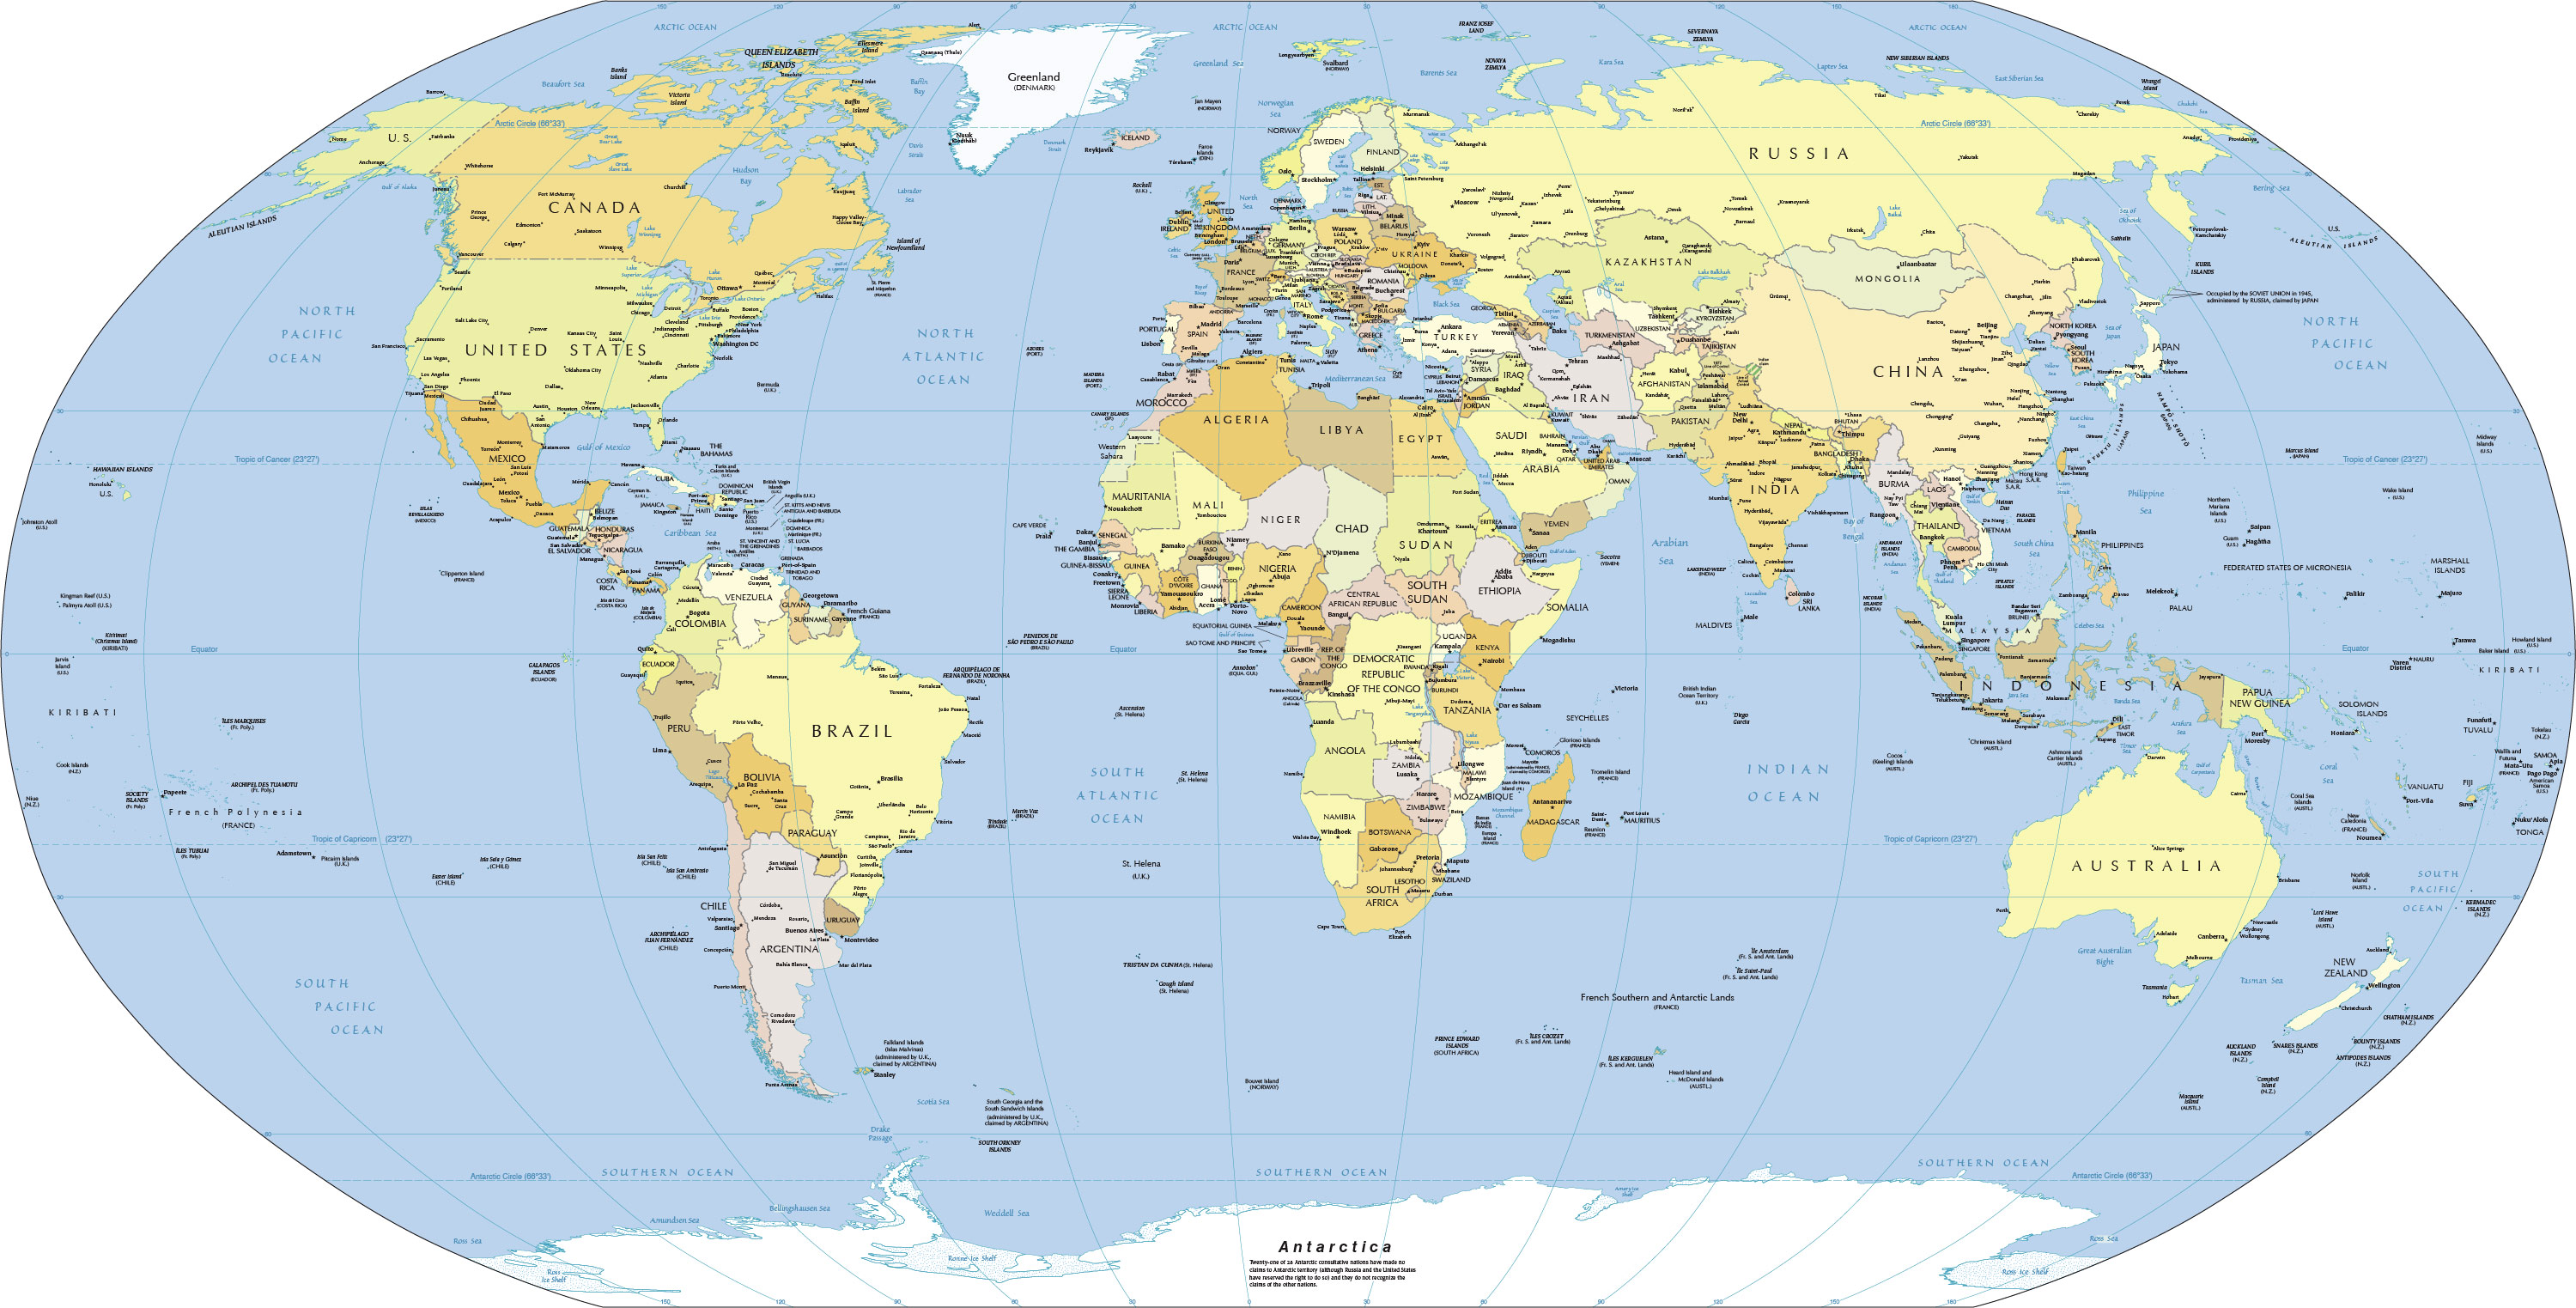 http://www.nationsonline.org/maps/political_world_map3000.jpg